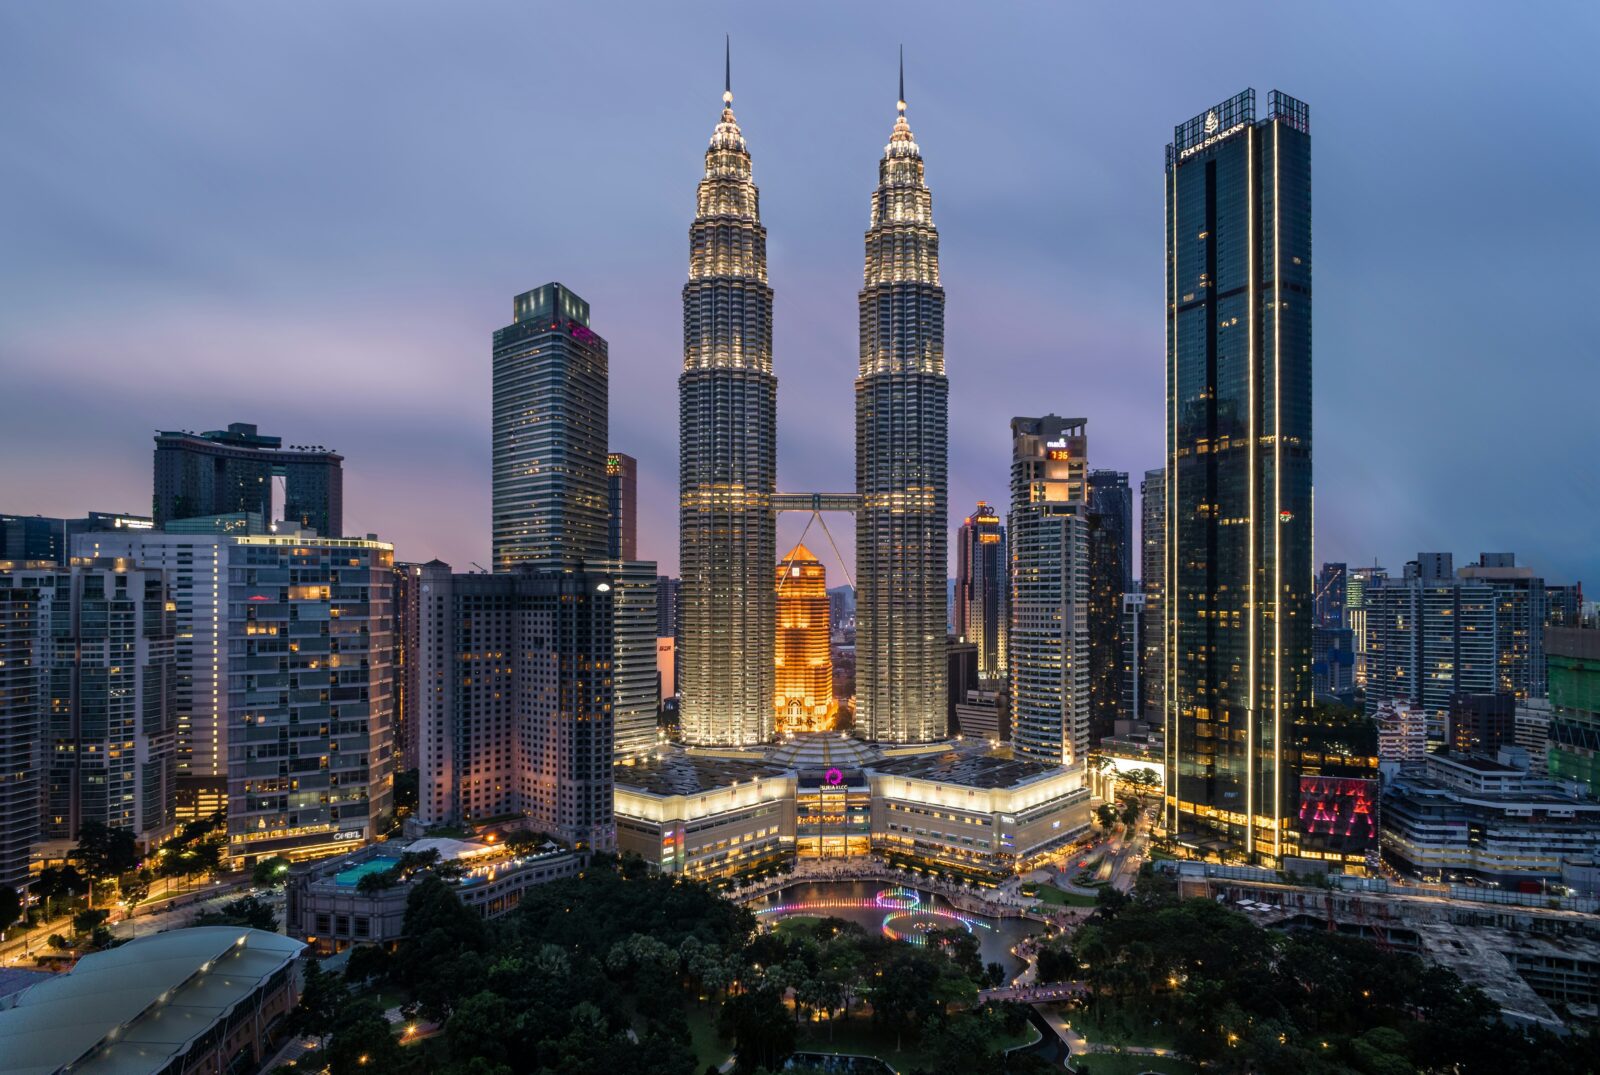 Petronas Towers skyline with tall buildings